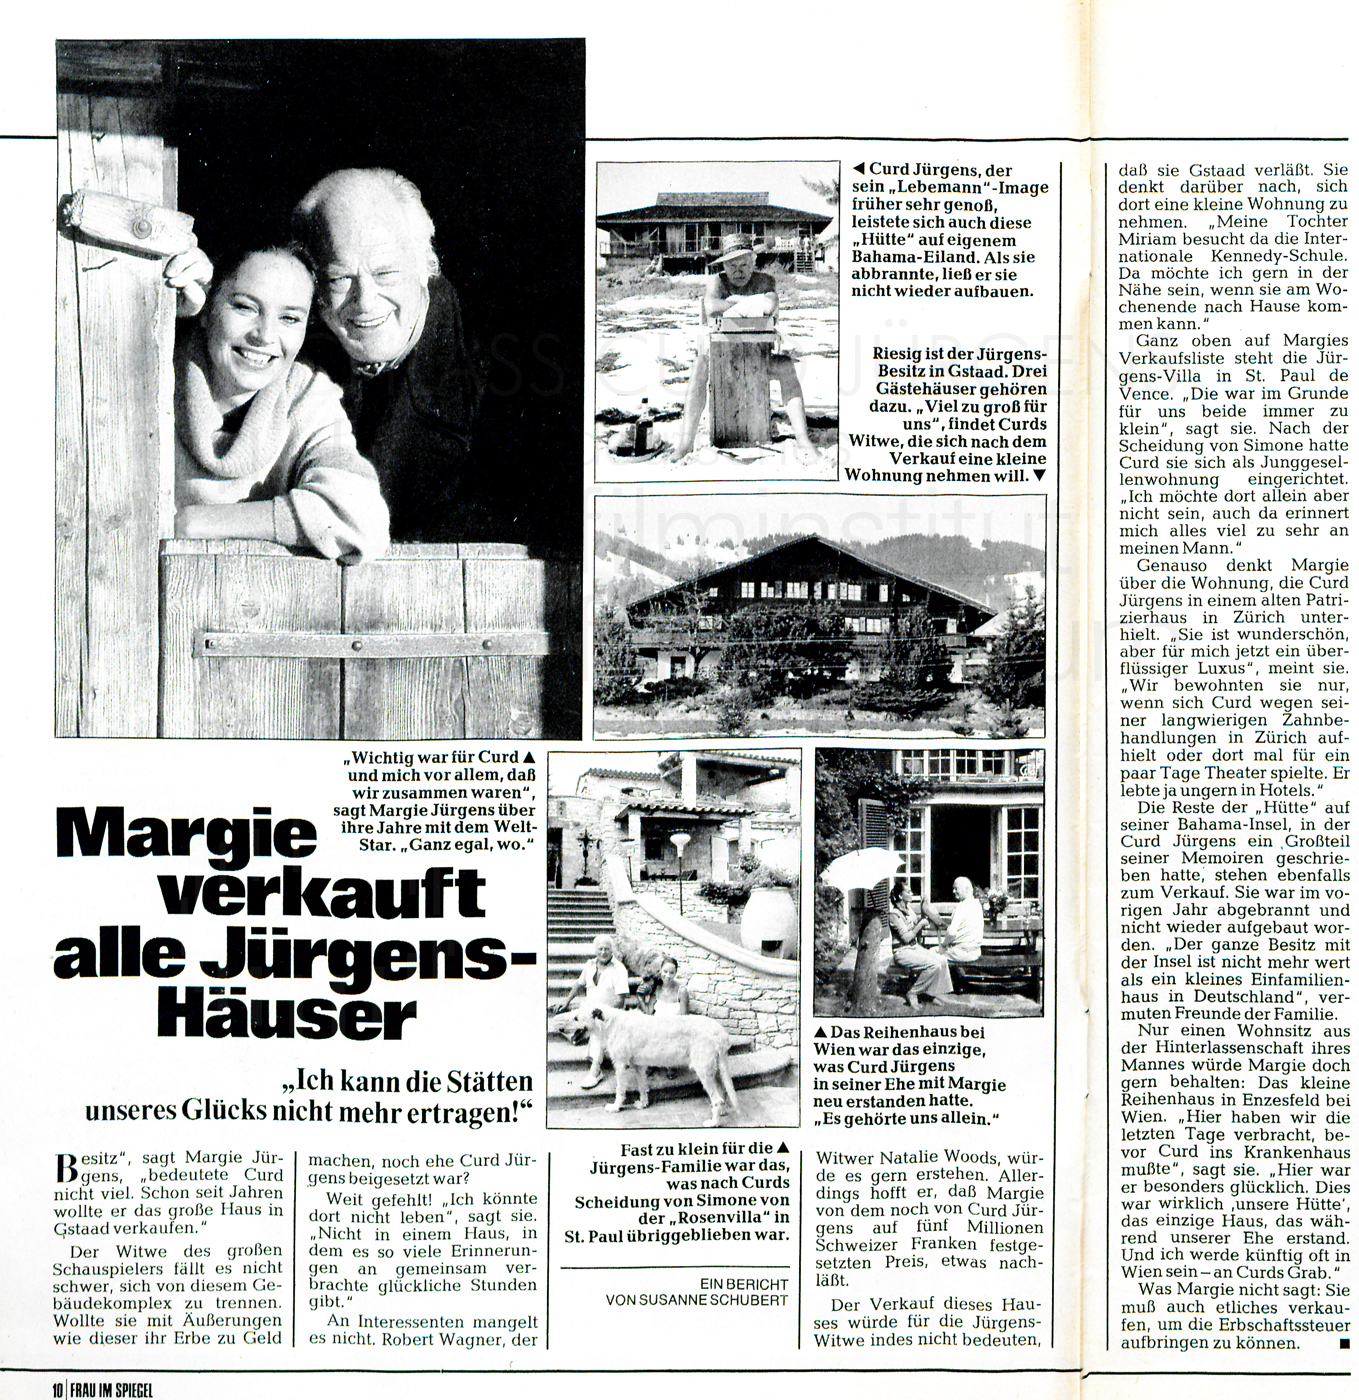 Frau im Spiegel: „Margie verkauft alle Jürgens Häuser“, Nr. 27, 1982.